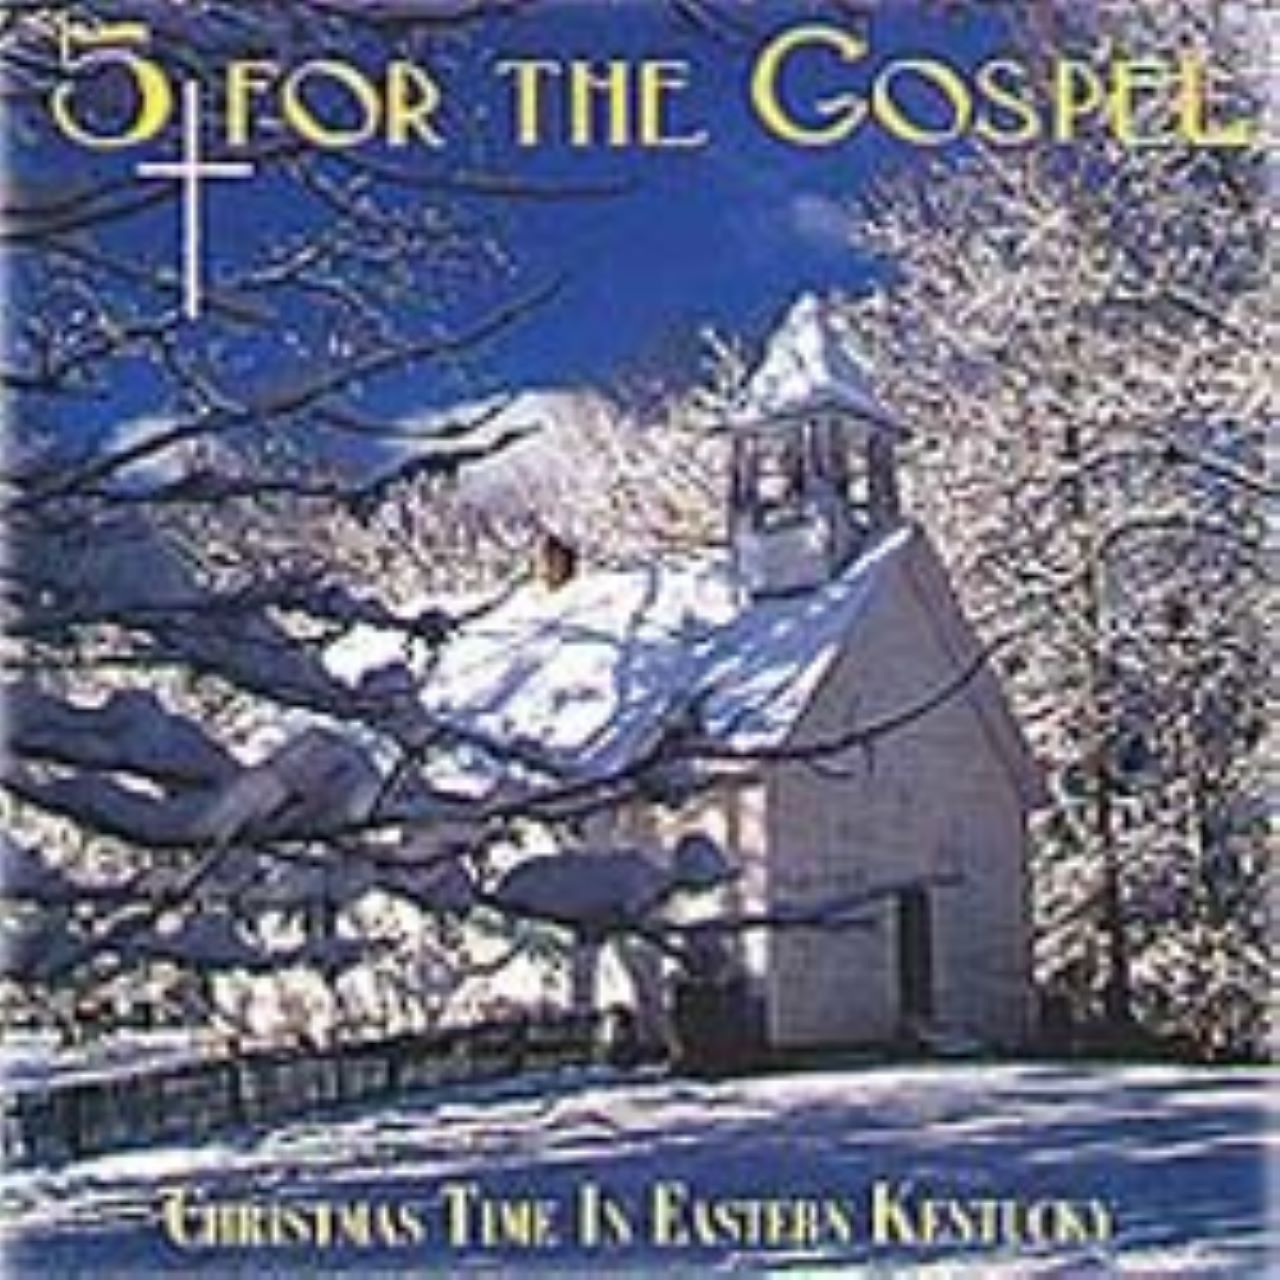 5 For The Gospel - Christmas Time In Eastern Kentucky cover album